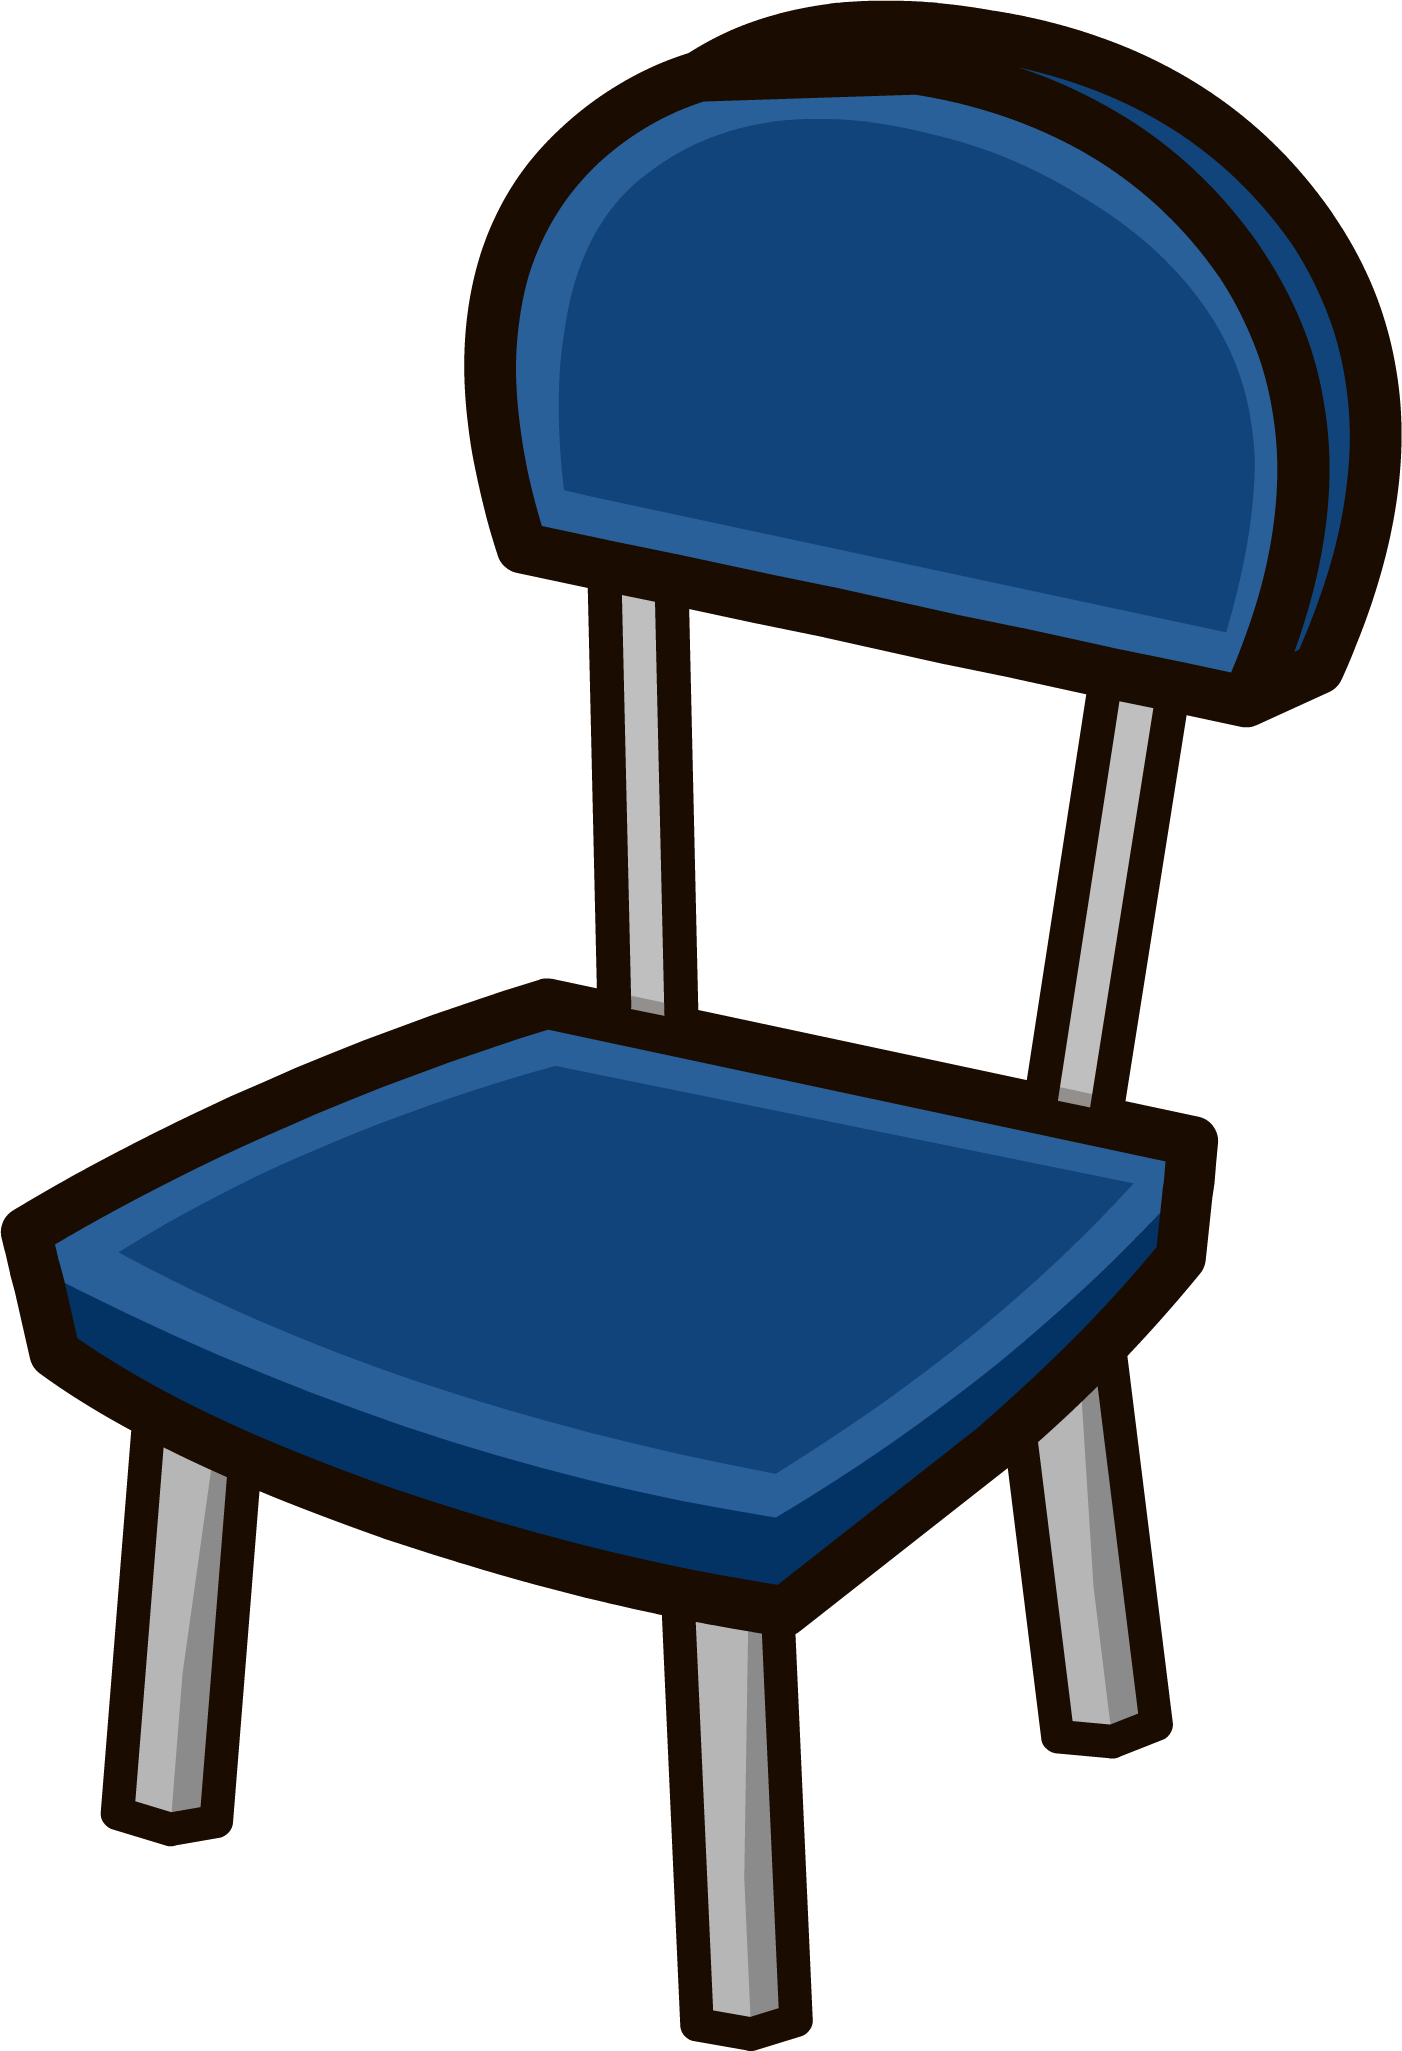 Judge's Chair - Club Penguin Chair (1402x2051)